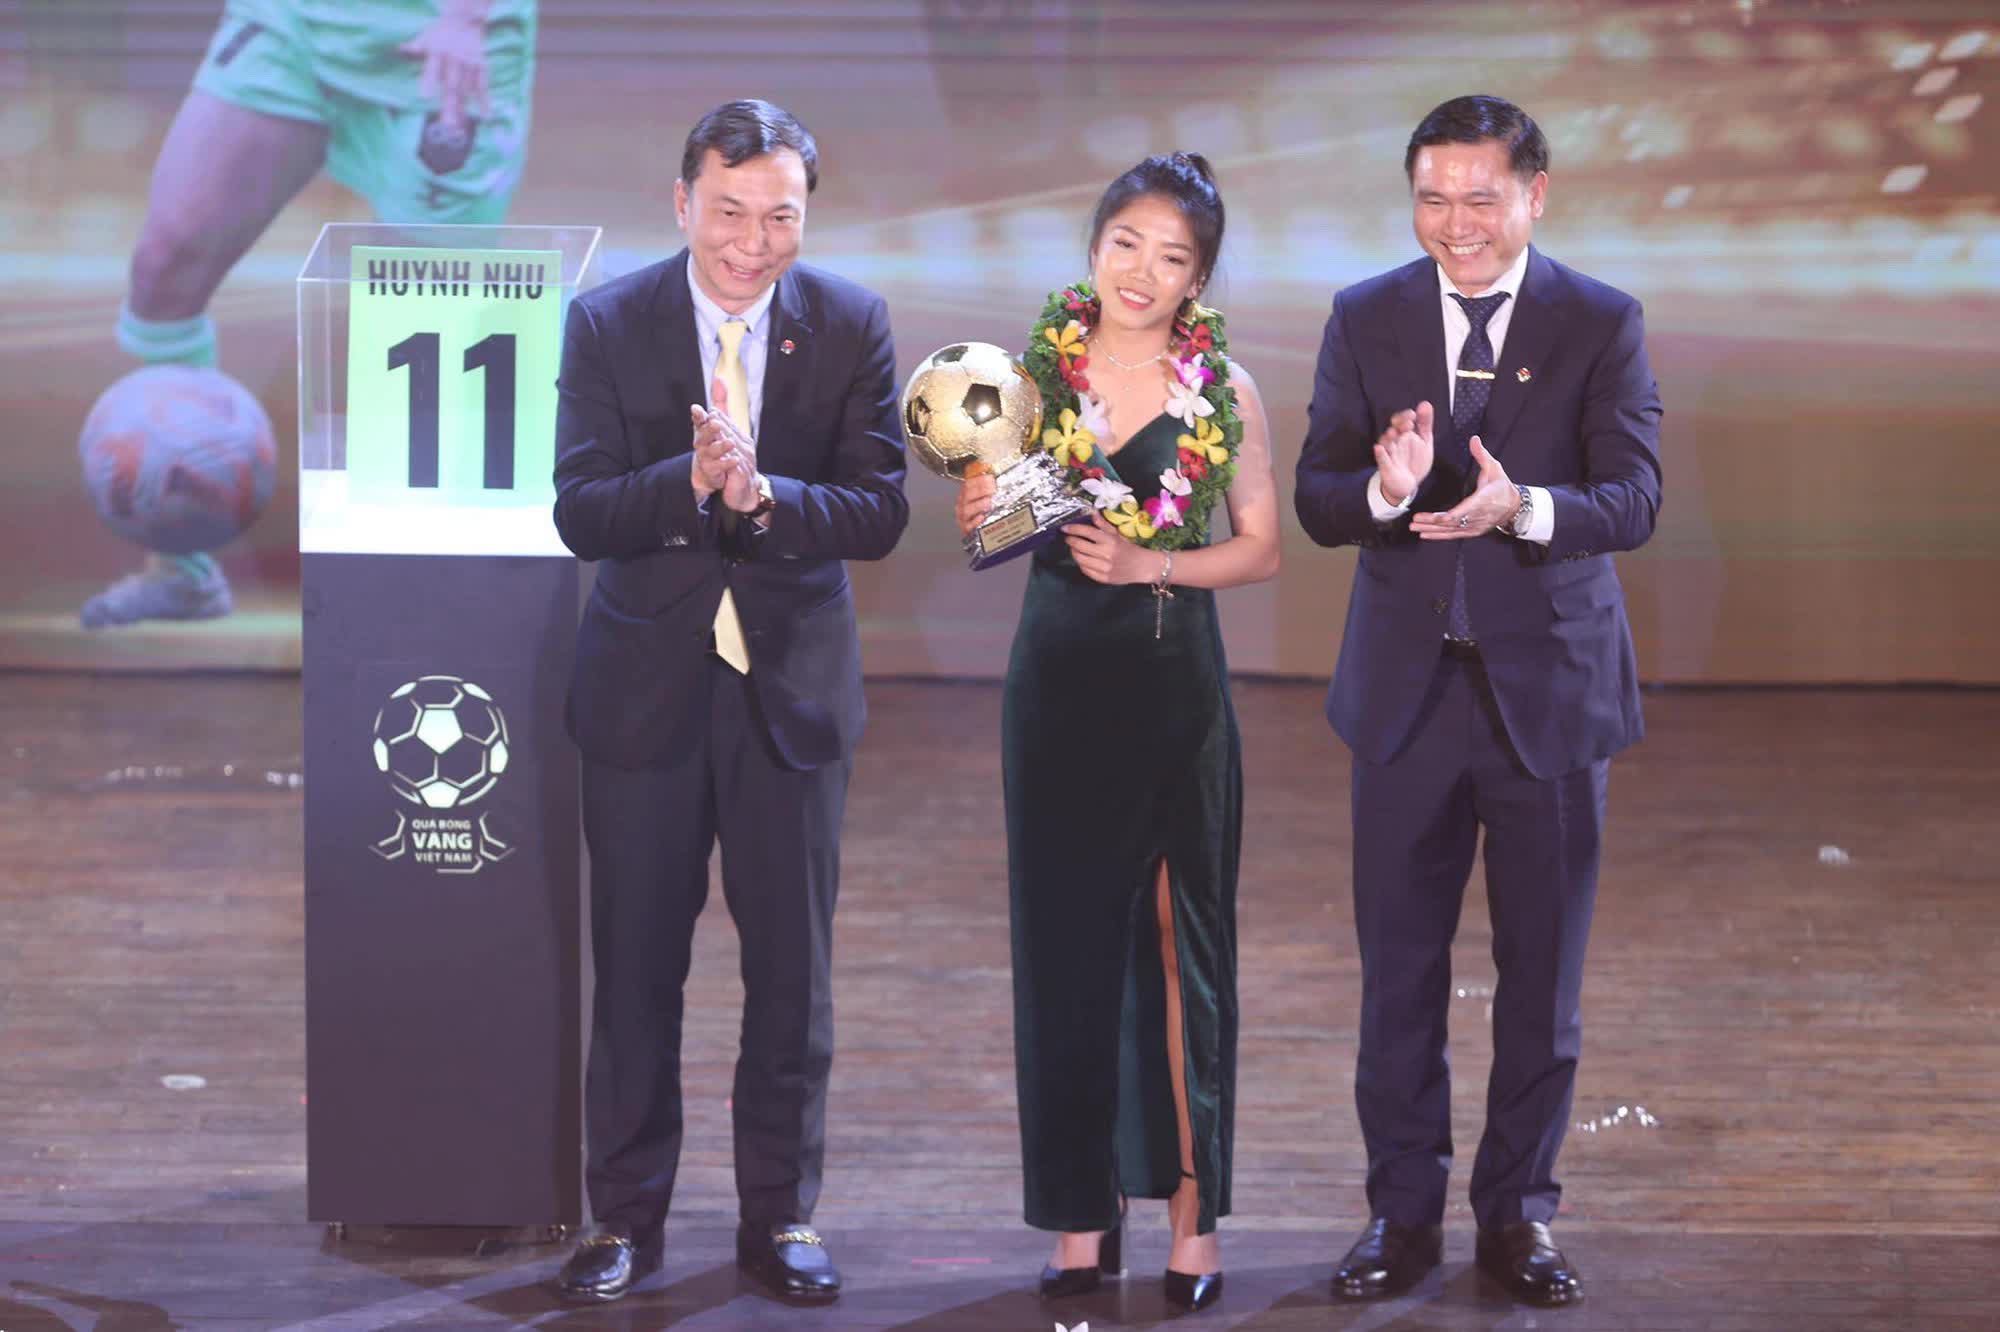 Hình ảnh thú vị: Đồng đội Lank FC tụ tập xem Huỳnh Như giành Quả bóng vàng - Ảnh 2.